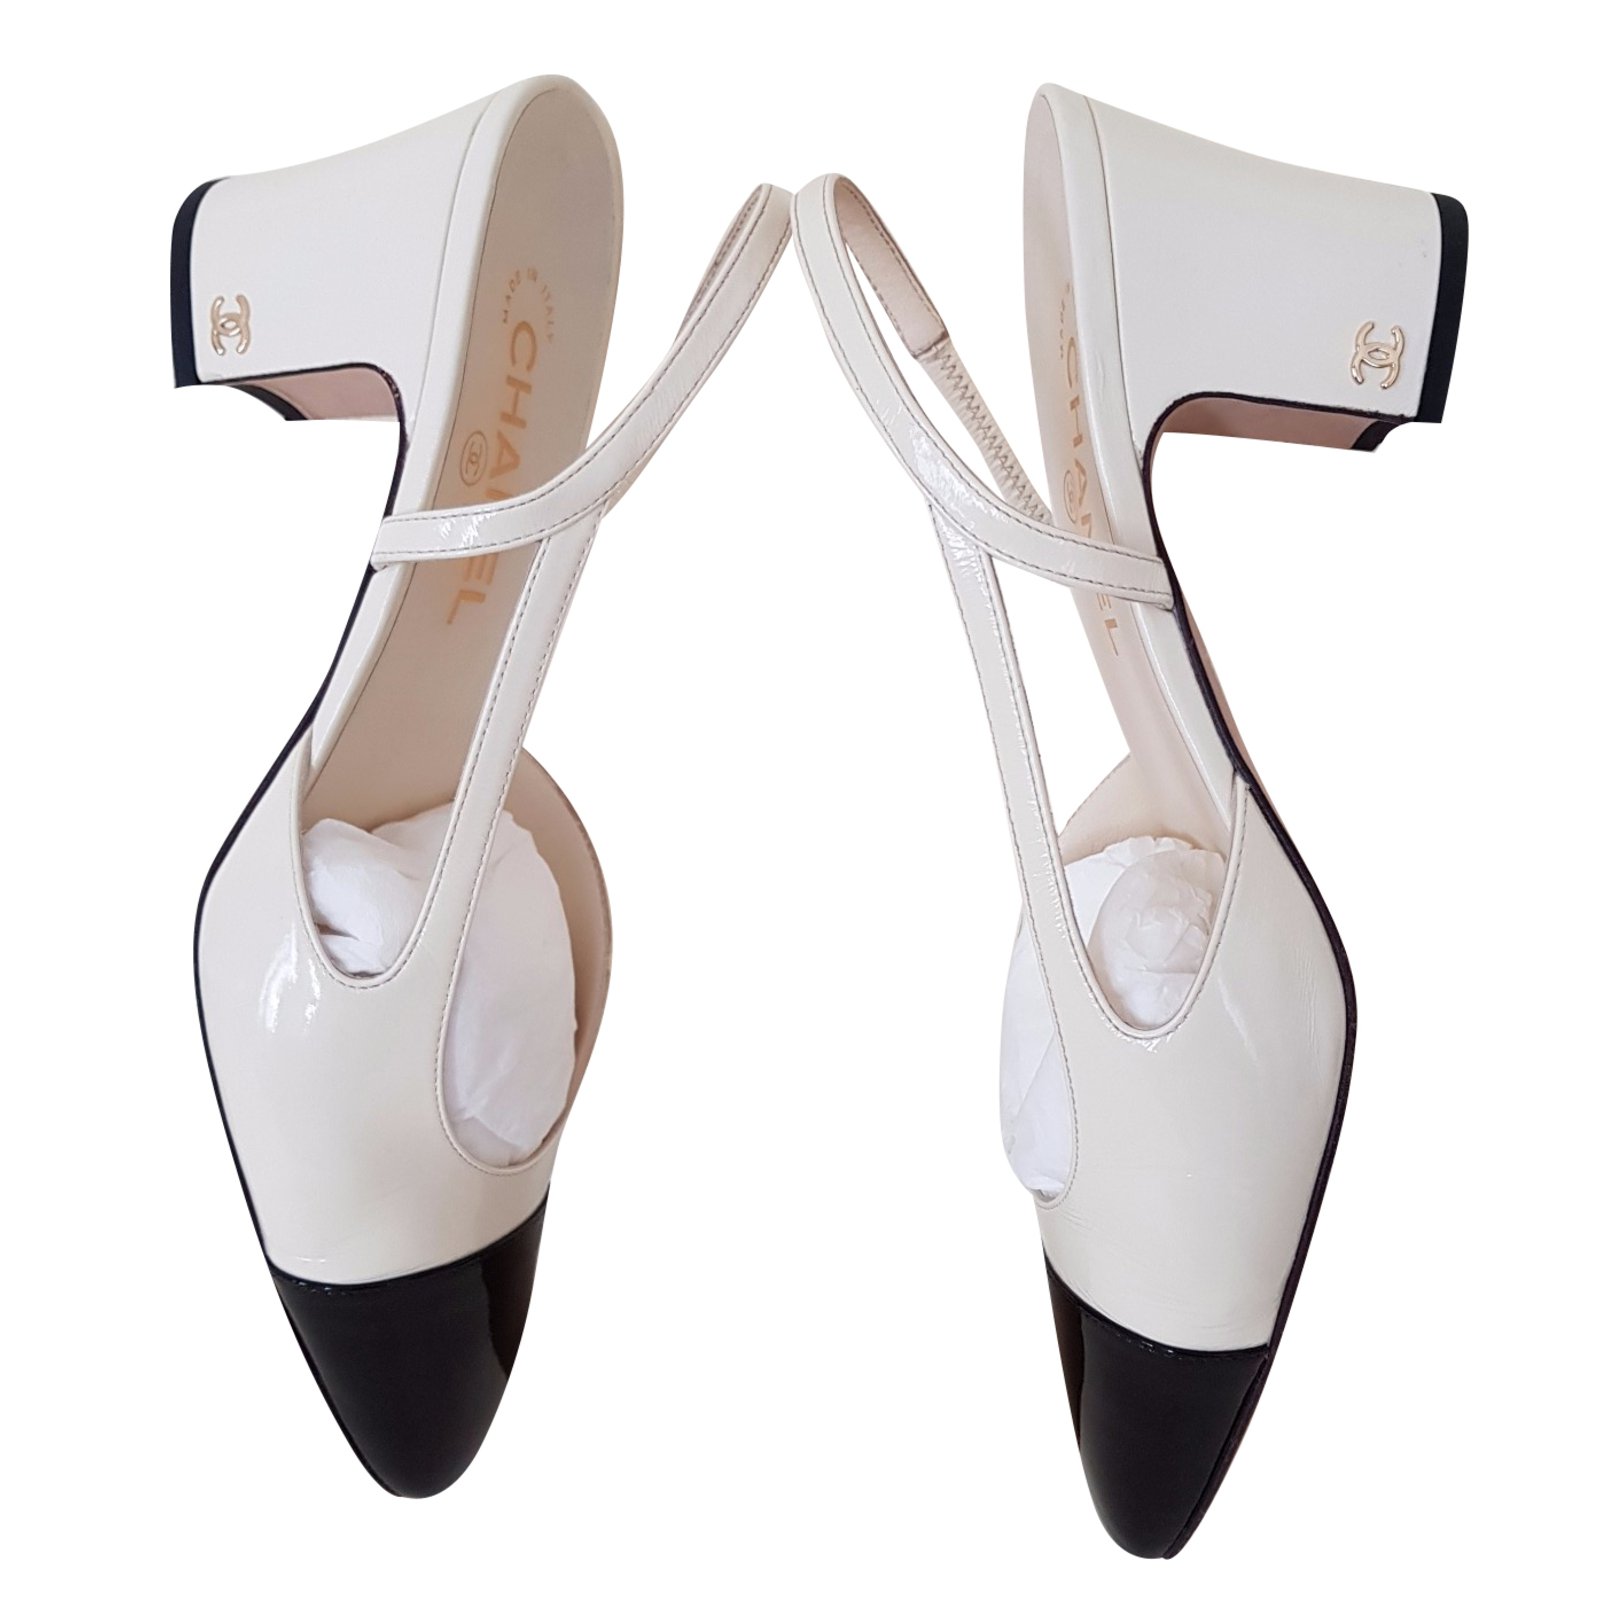 Women's Louis Vuitton Heels from C$937